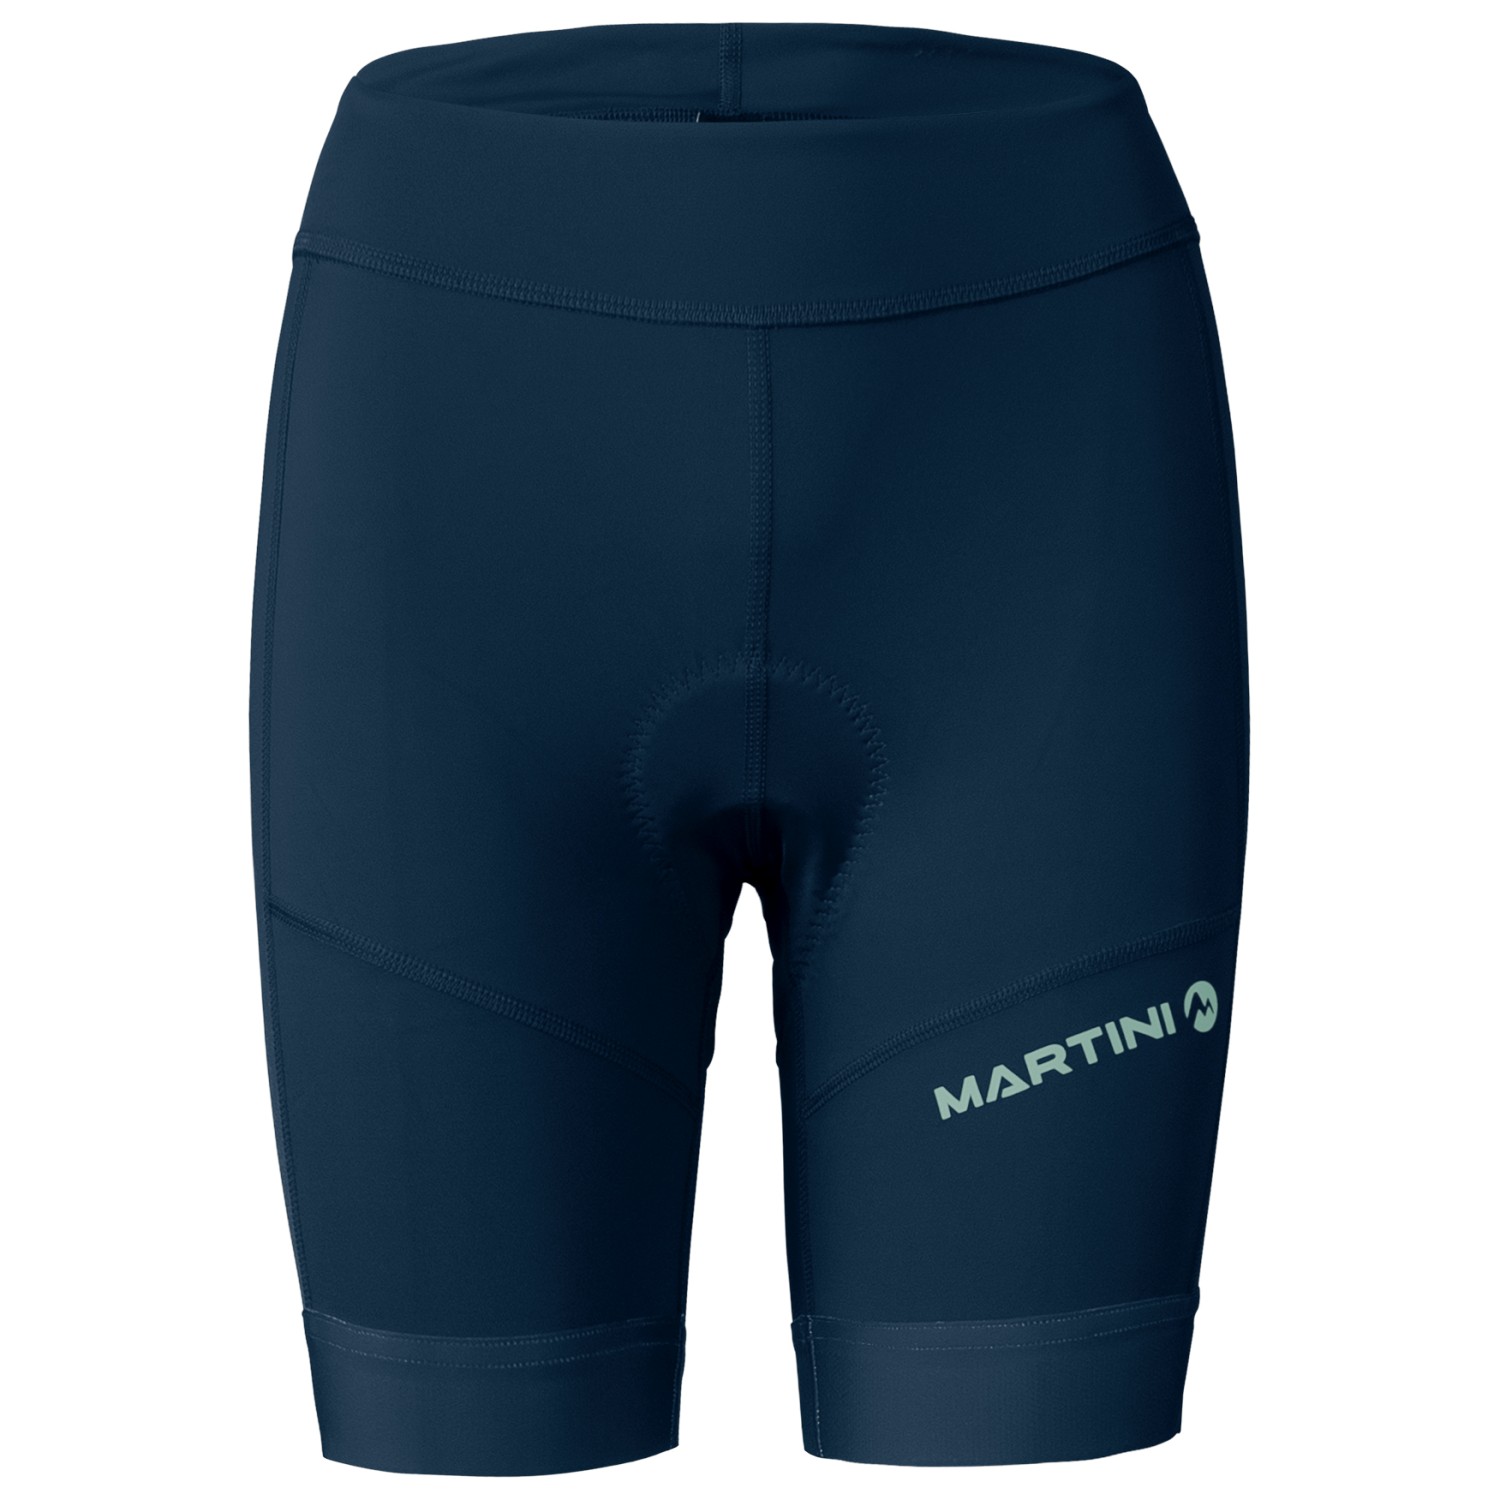 Велосипедные шорты Martini Women's Flowtrail Shorts, цвет true navy